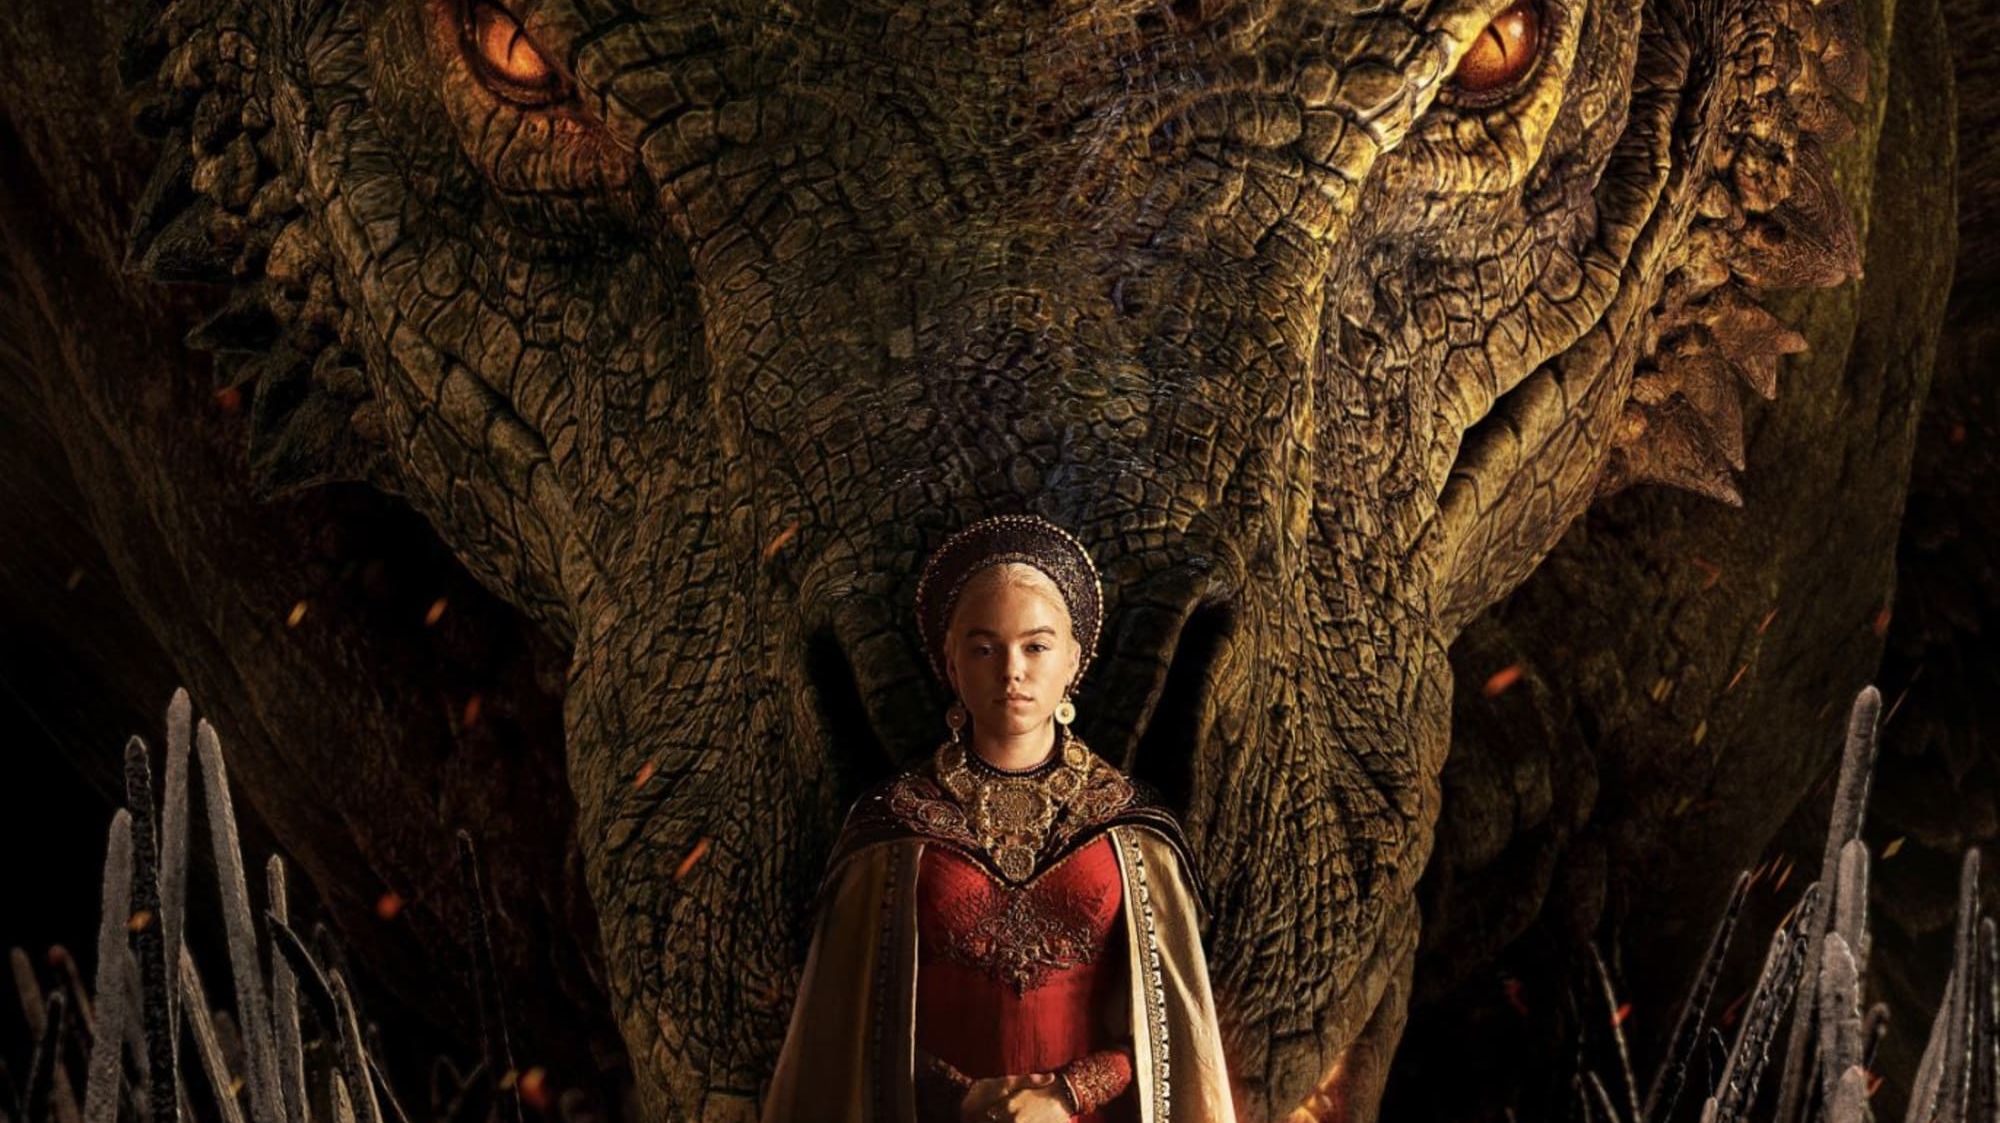 El personaje de “Game of Thrones” que podríamos ver en “House of the Dragon”